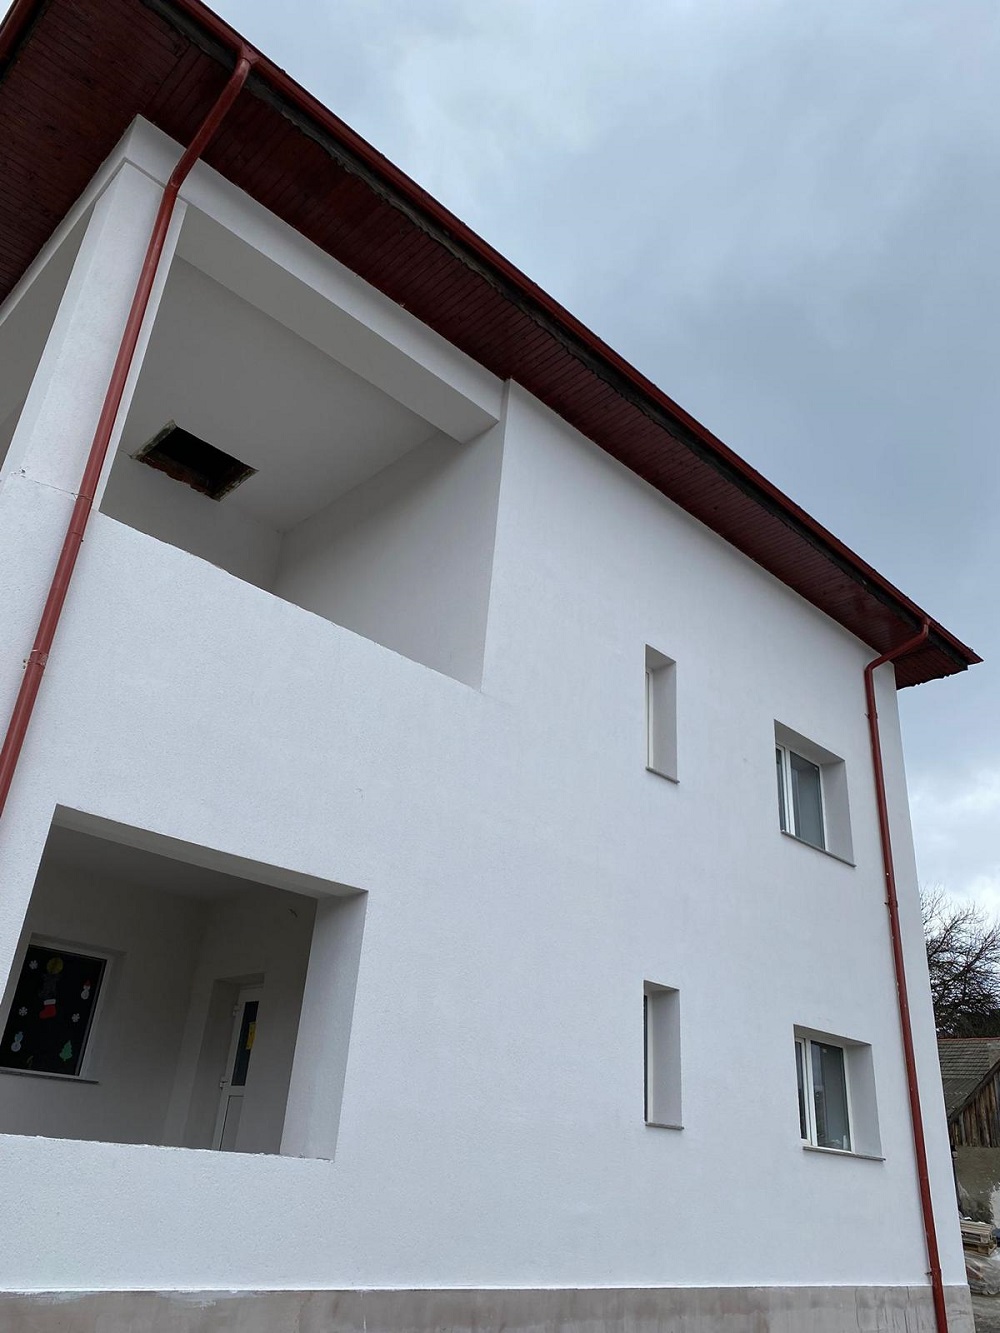 Școala din Lădăuți a fost renovată. 124.000 de livrări prin OLX au salvat unitatea de învățământ - Imaginea 3